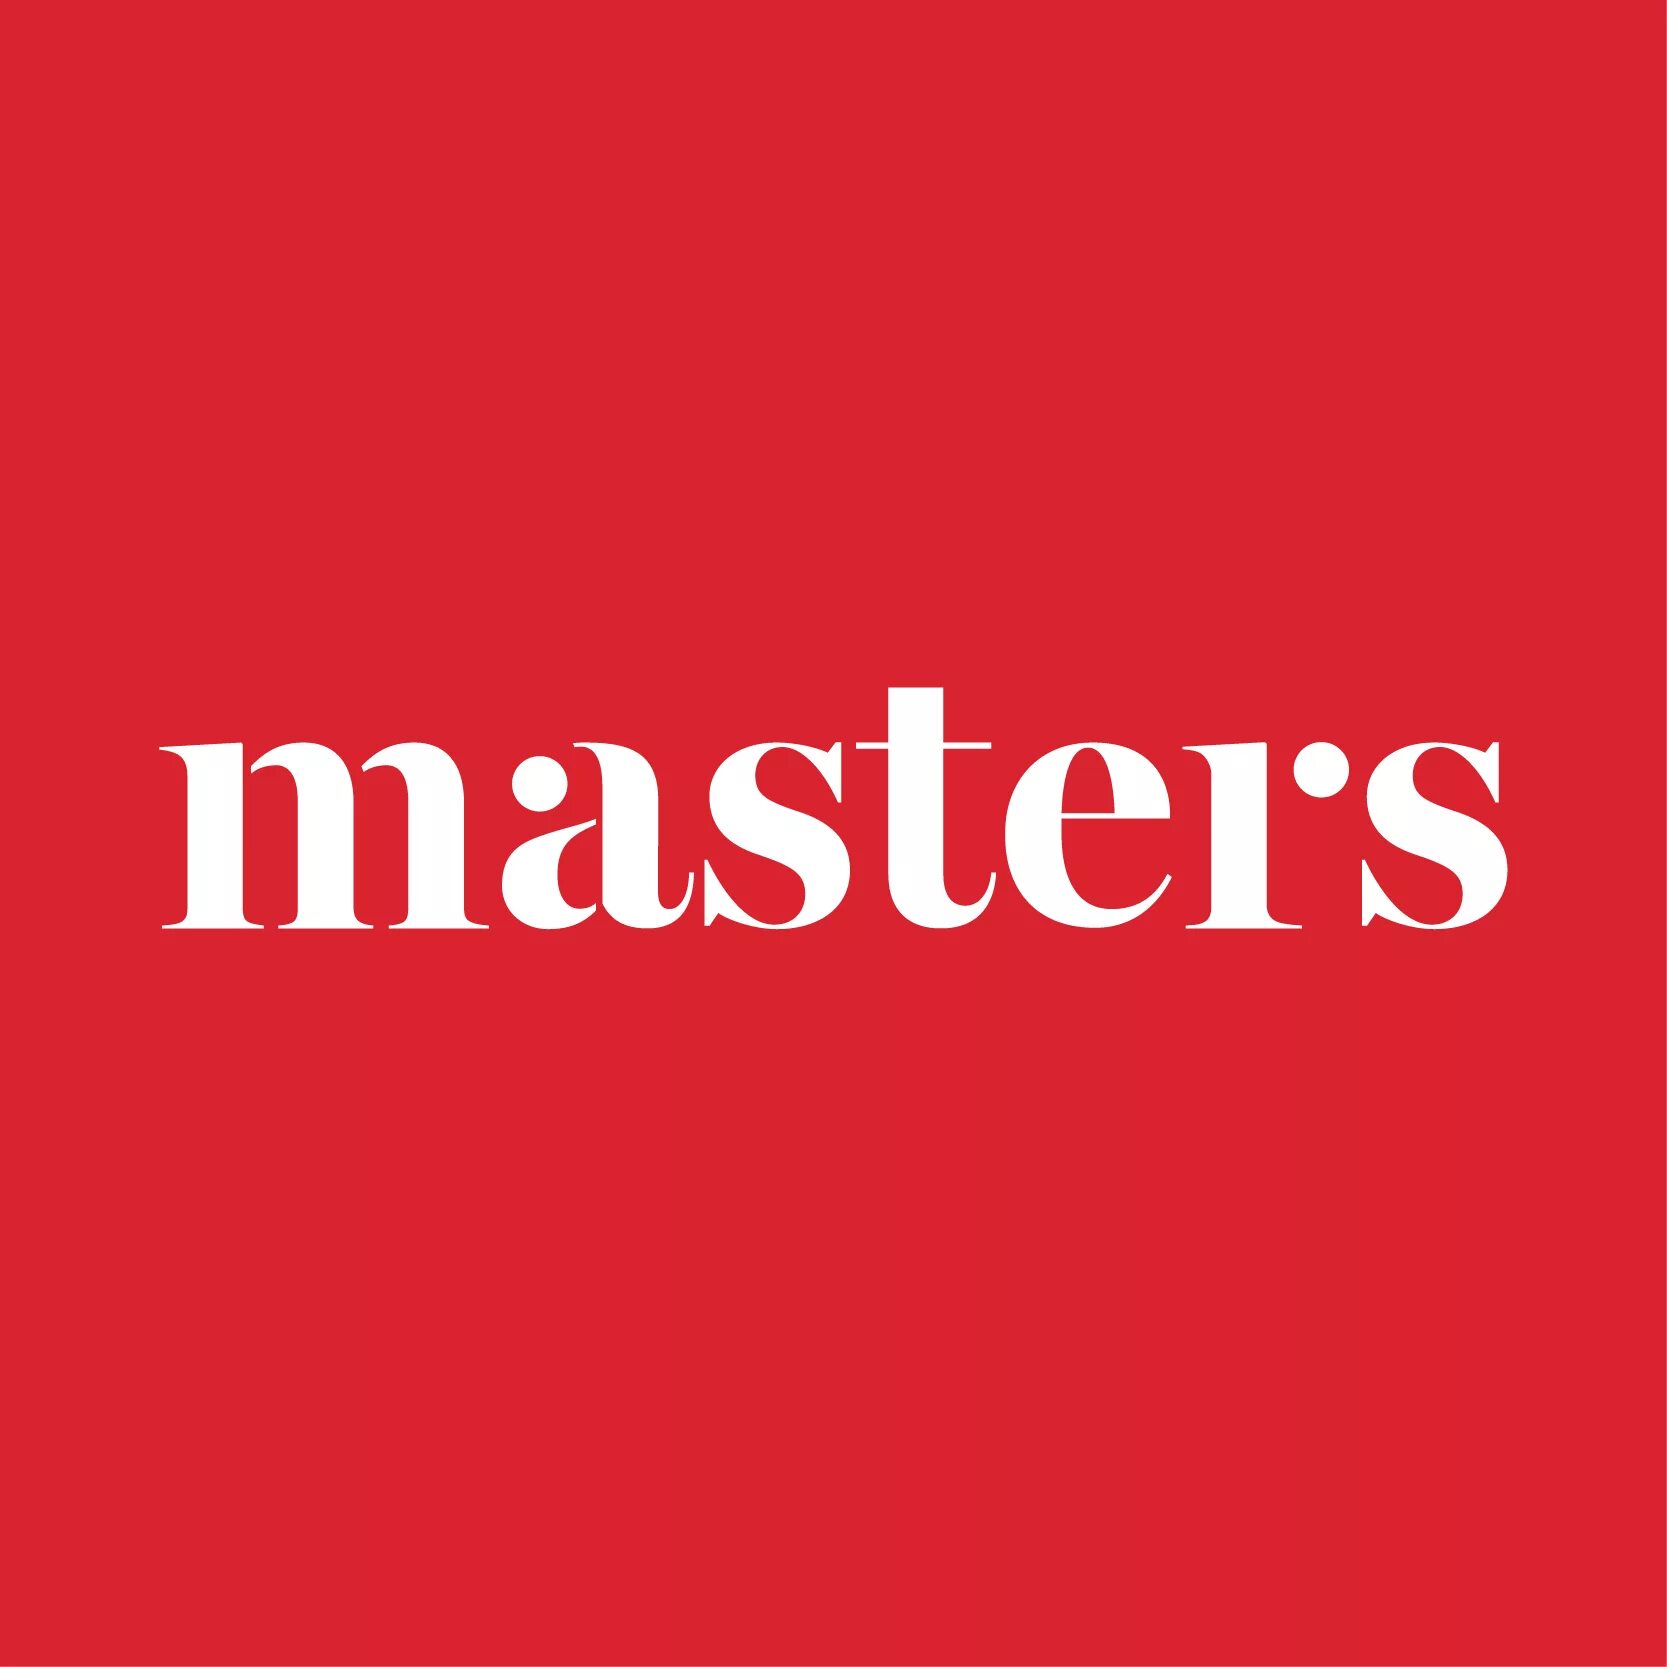 Masters школа. Школа Masters СПБ. Masters школа лого. Школа Мастеров логотип.